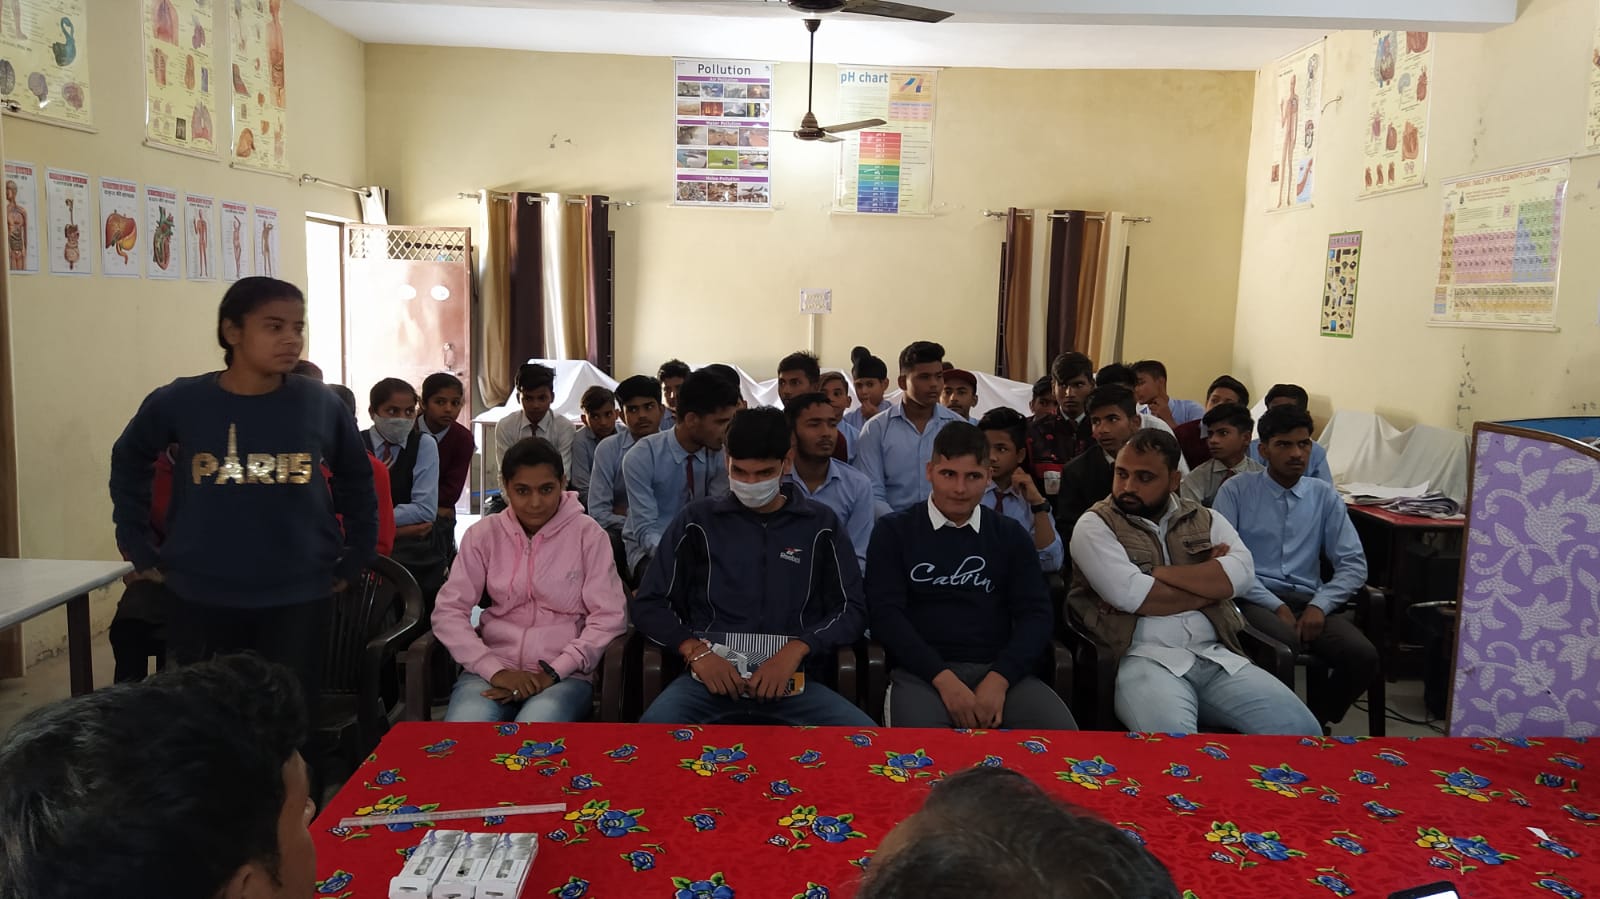 नेहरू युवा केंद्र ने भगवानपुर के बुधवा शहीद गांव में कराई भाषण प्रतियोगिता